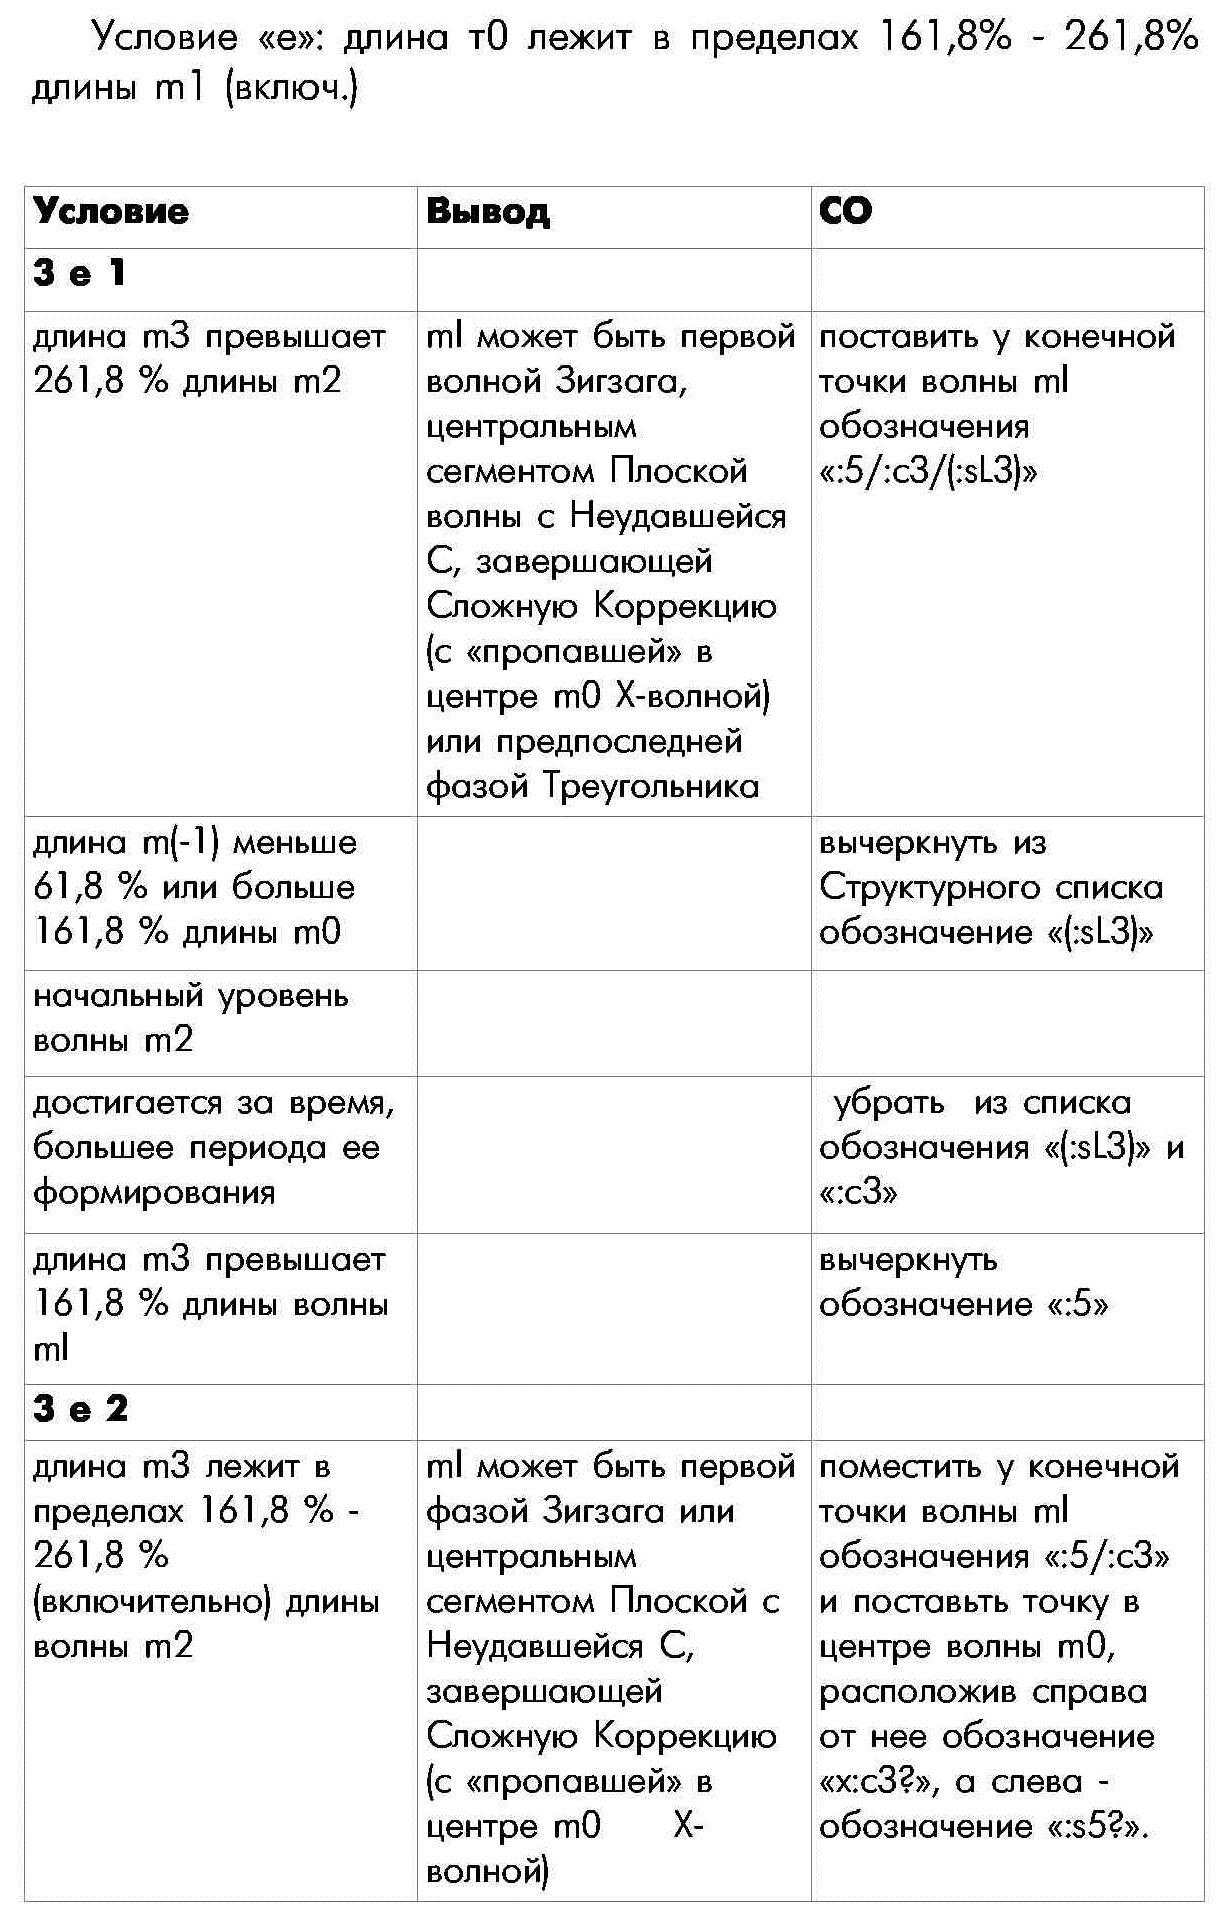 Правило П-3 определения внутренней структуры моноволны пятнадцатая часть таблицы условие